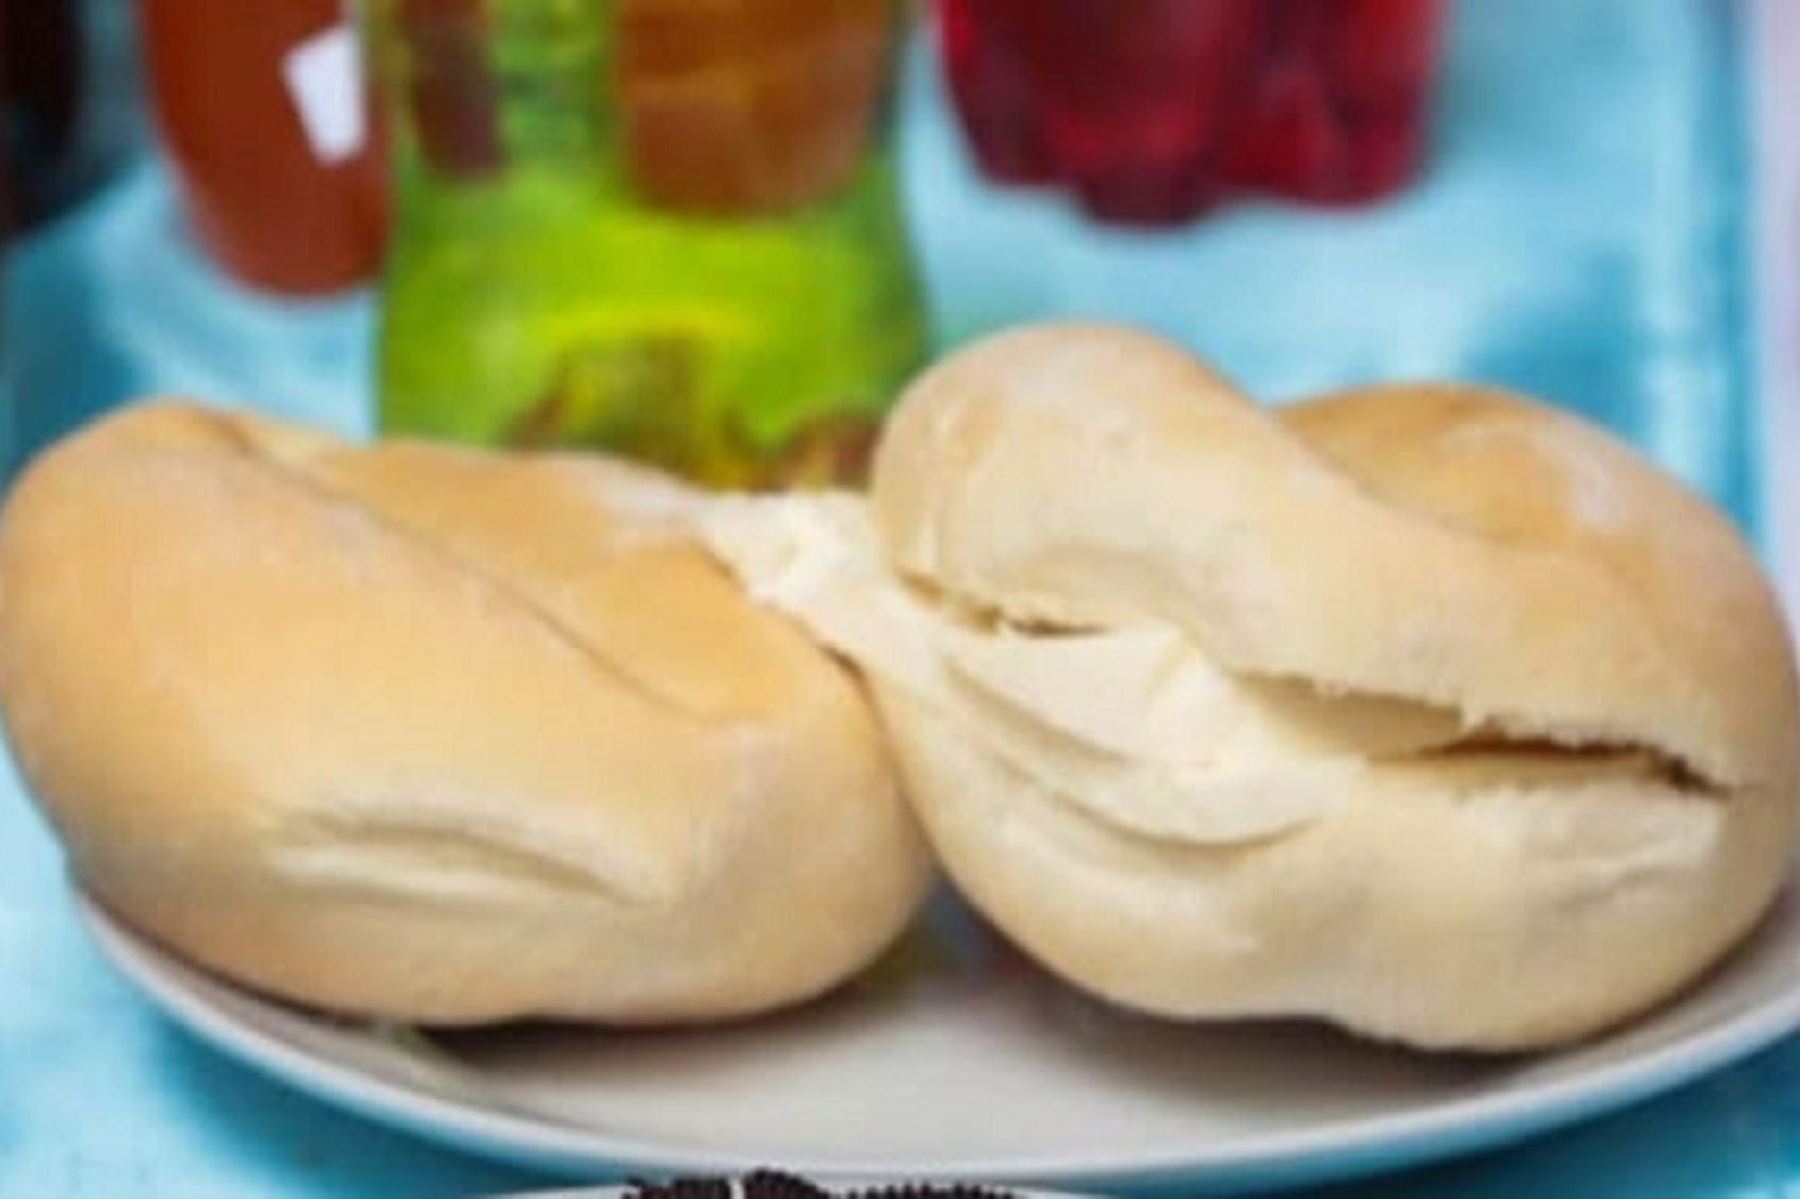 Nutricionista te enseña a preparar pan casero fácil, económico y en familia  | Noticias | Agencia Peruana de Noticias Andina